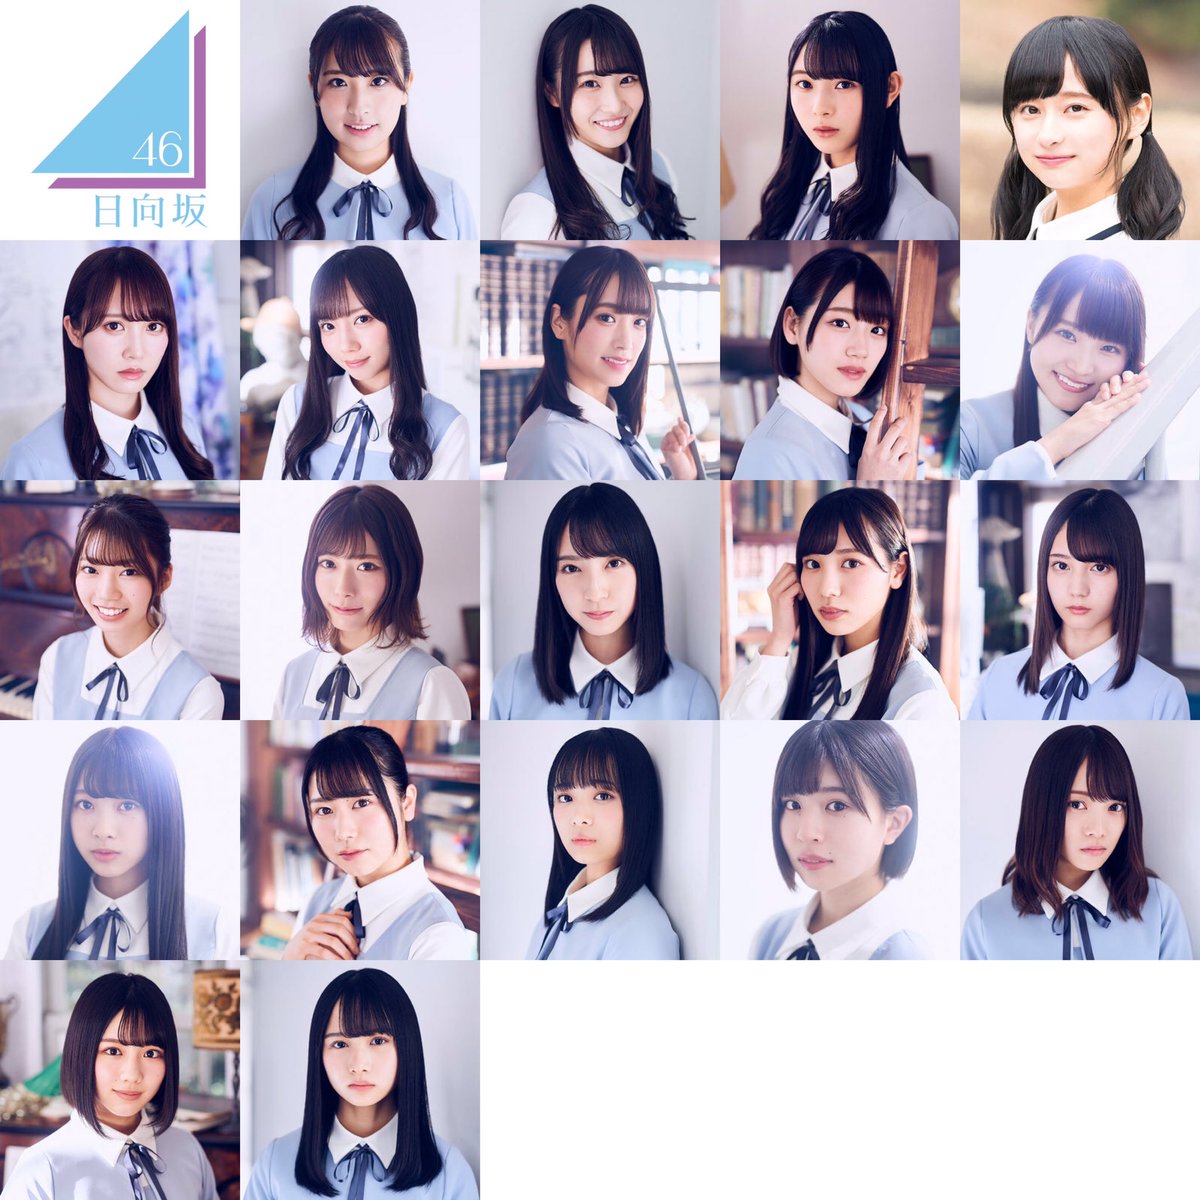 日向坂46のメンバー 顔がかわいいランキングtop21 2020最新版